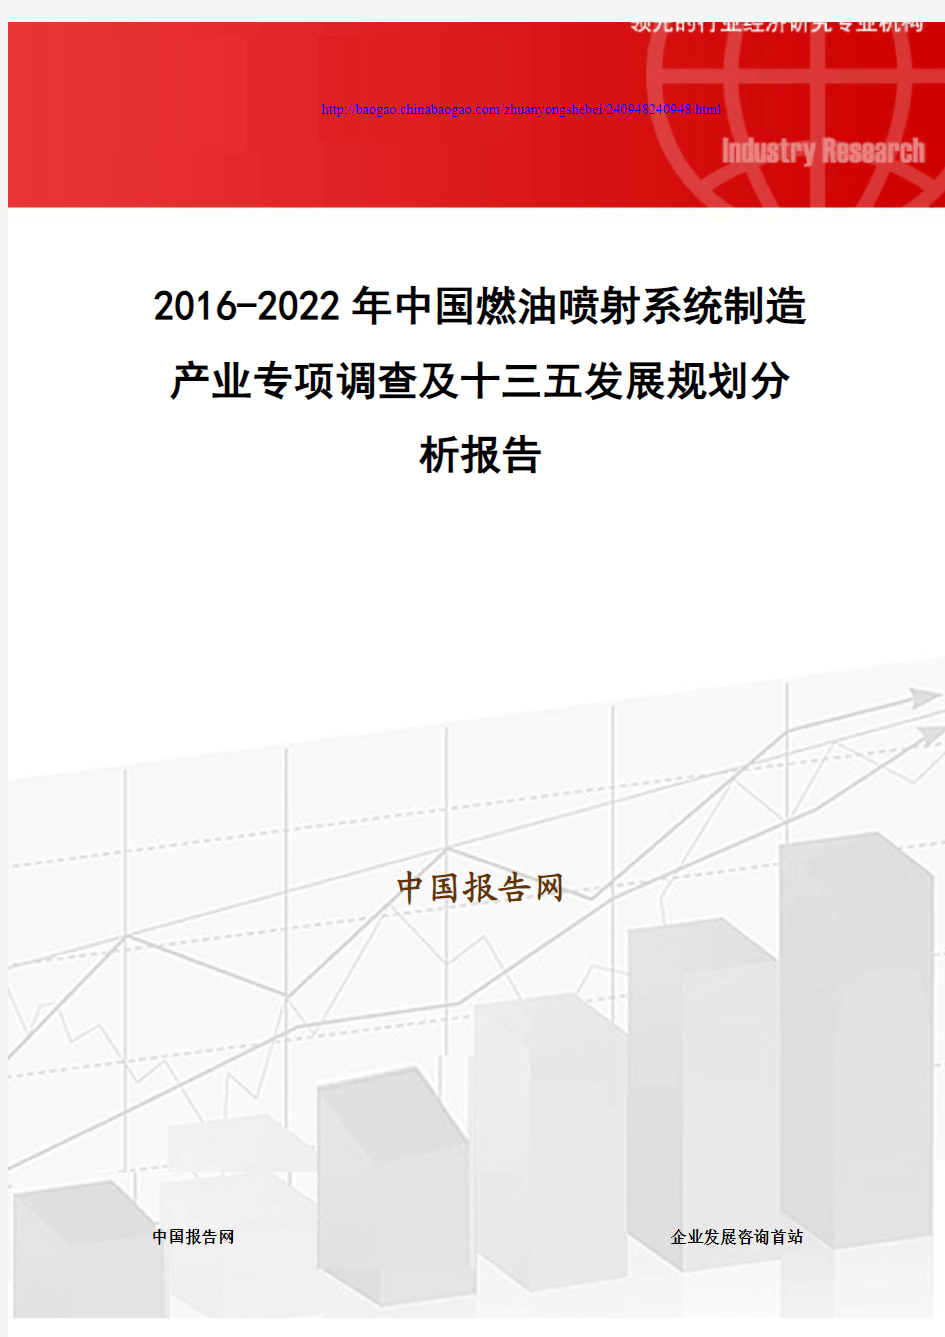 2016-2022年中国燃油喷射系统制造产业专项调查及十三五发展规划分析报告